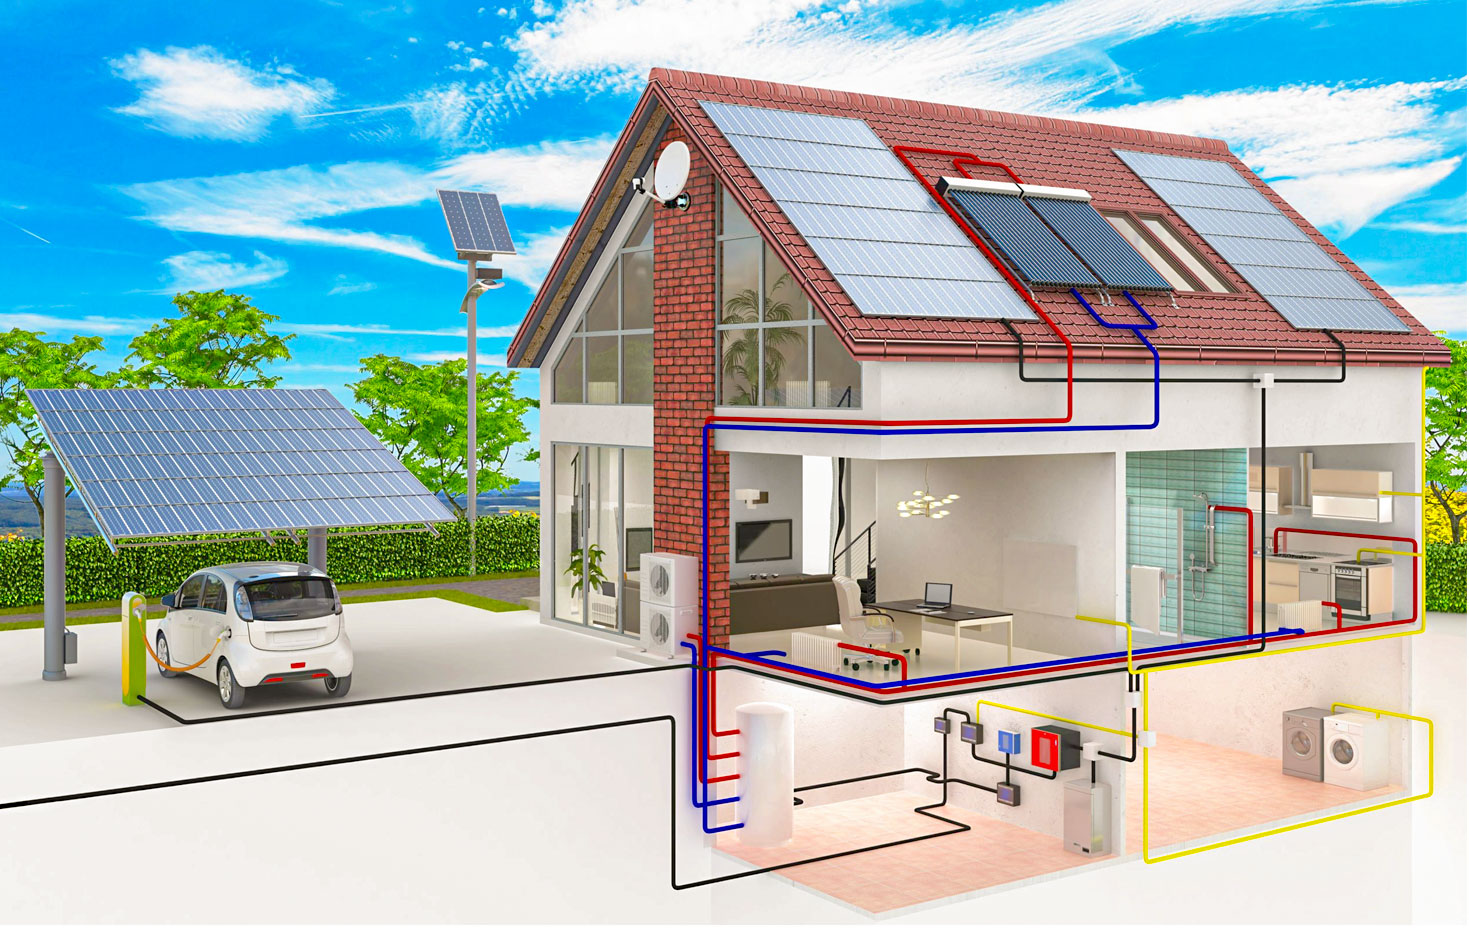 impianti fotovoltaici e batterie per residenziale dmt solar impianti fotovoltaici partner tesla, maxeon sunpower, solaredge